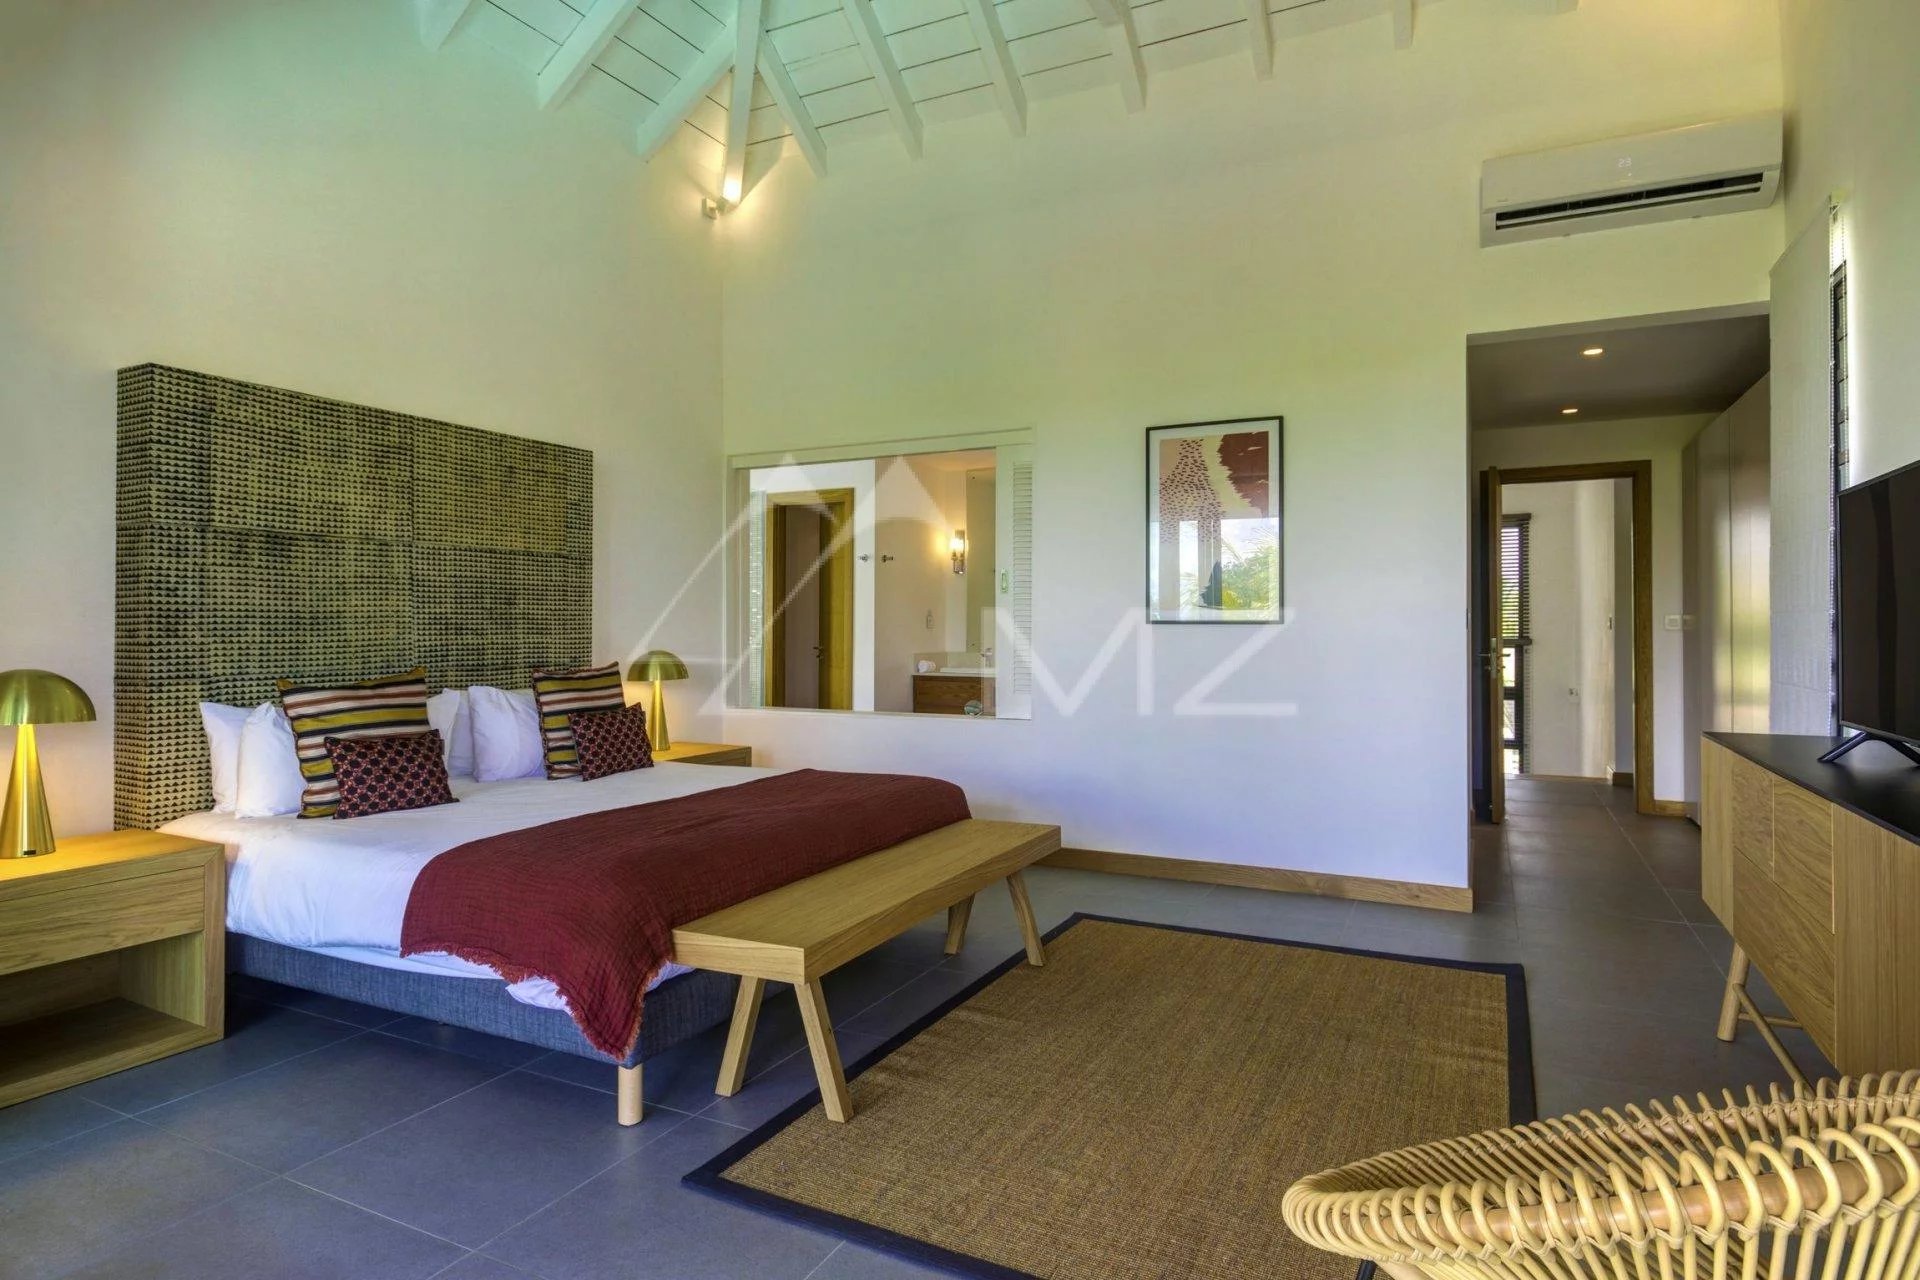 Mauritius - Villa in the heart of a Resort in Grand Gaube